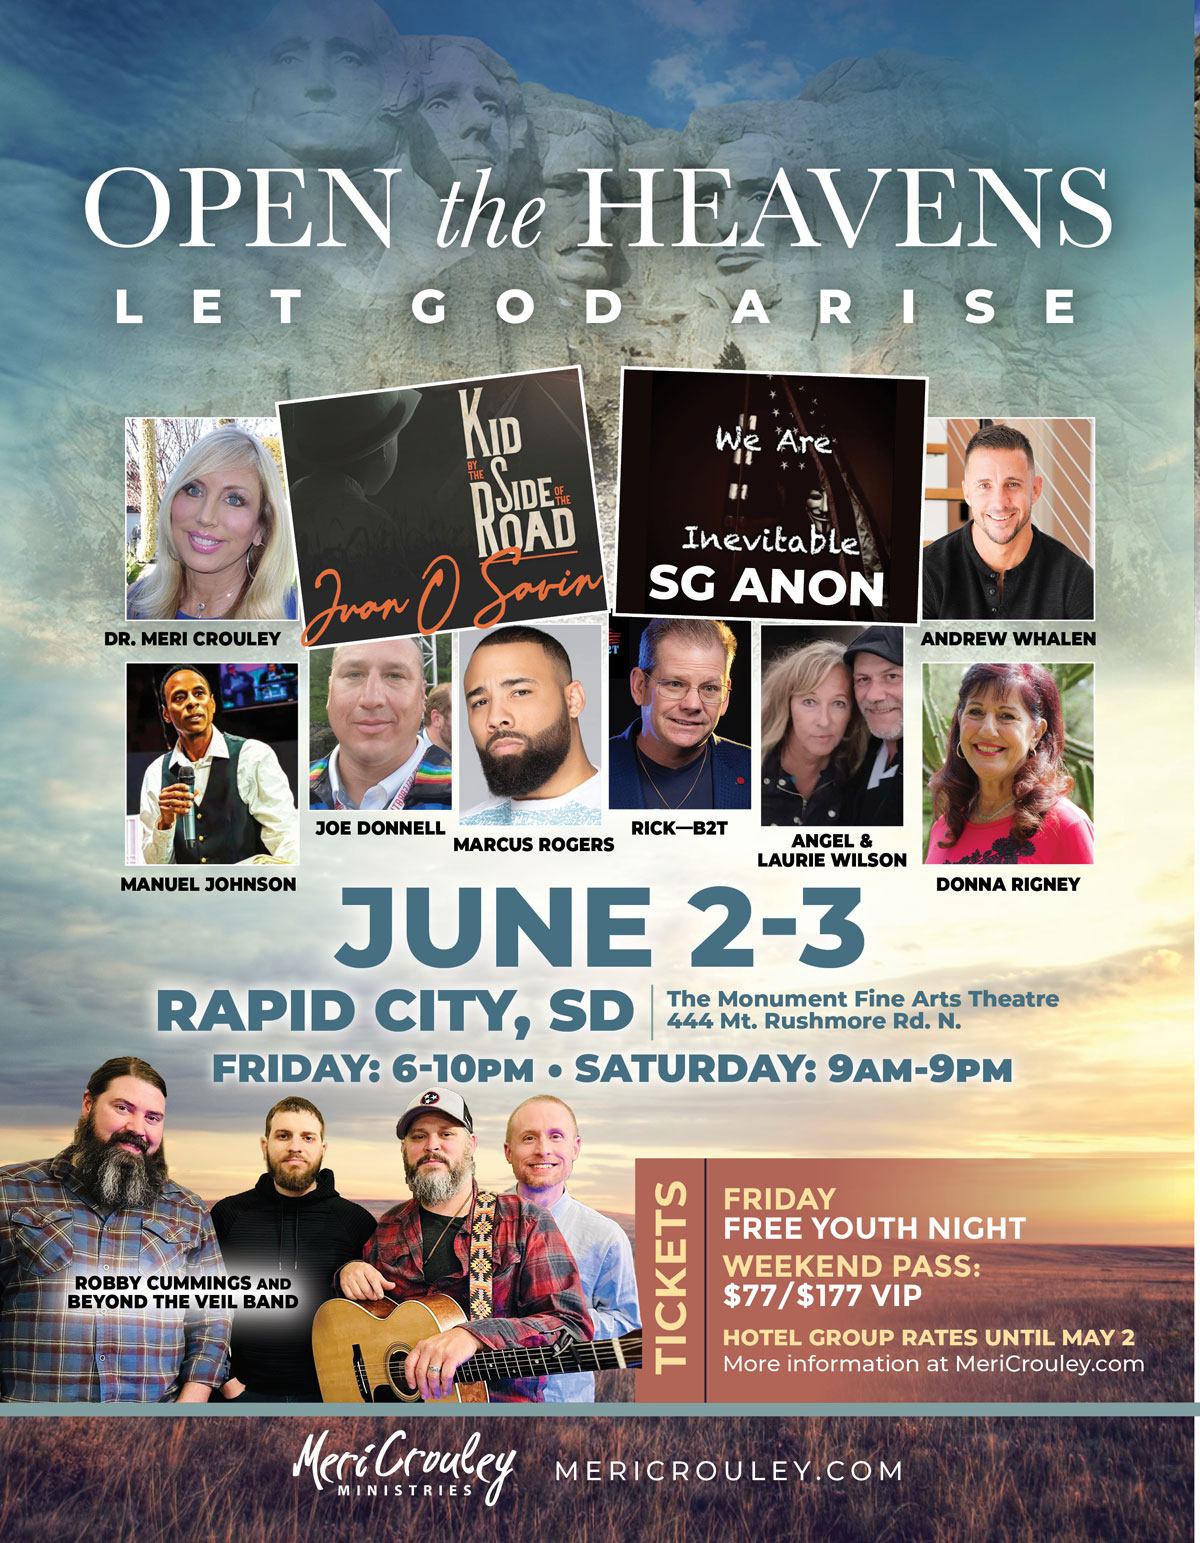 Open the Heavens – Let God Arise June 2-3 Rapid City, SD